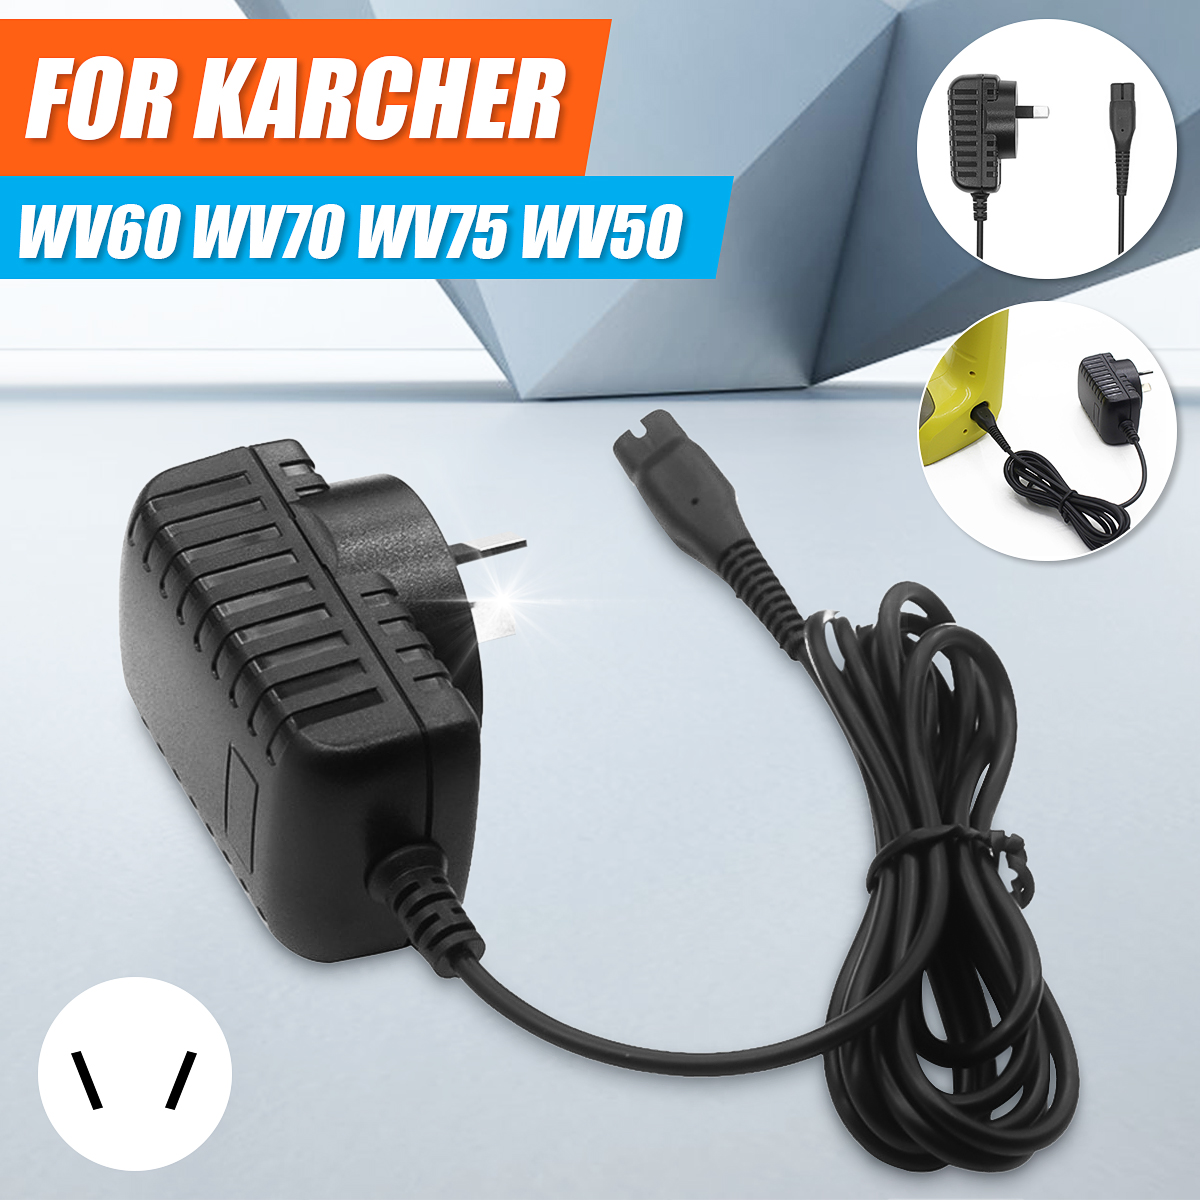 100V-240V-Power-Charger-for-Karcher-WV60-WV70-WV75-WV50-Window-Glass-Vacuum-Cleaner-1641157-2